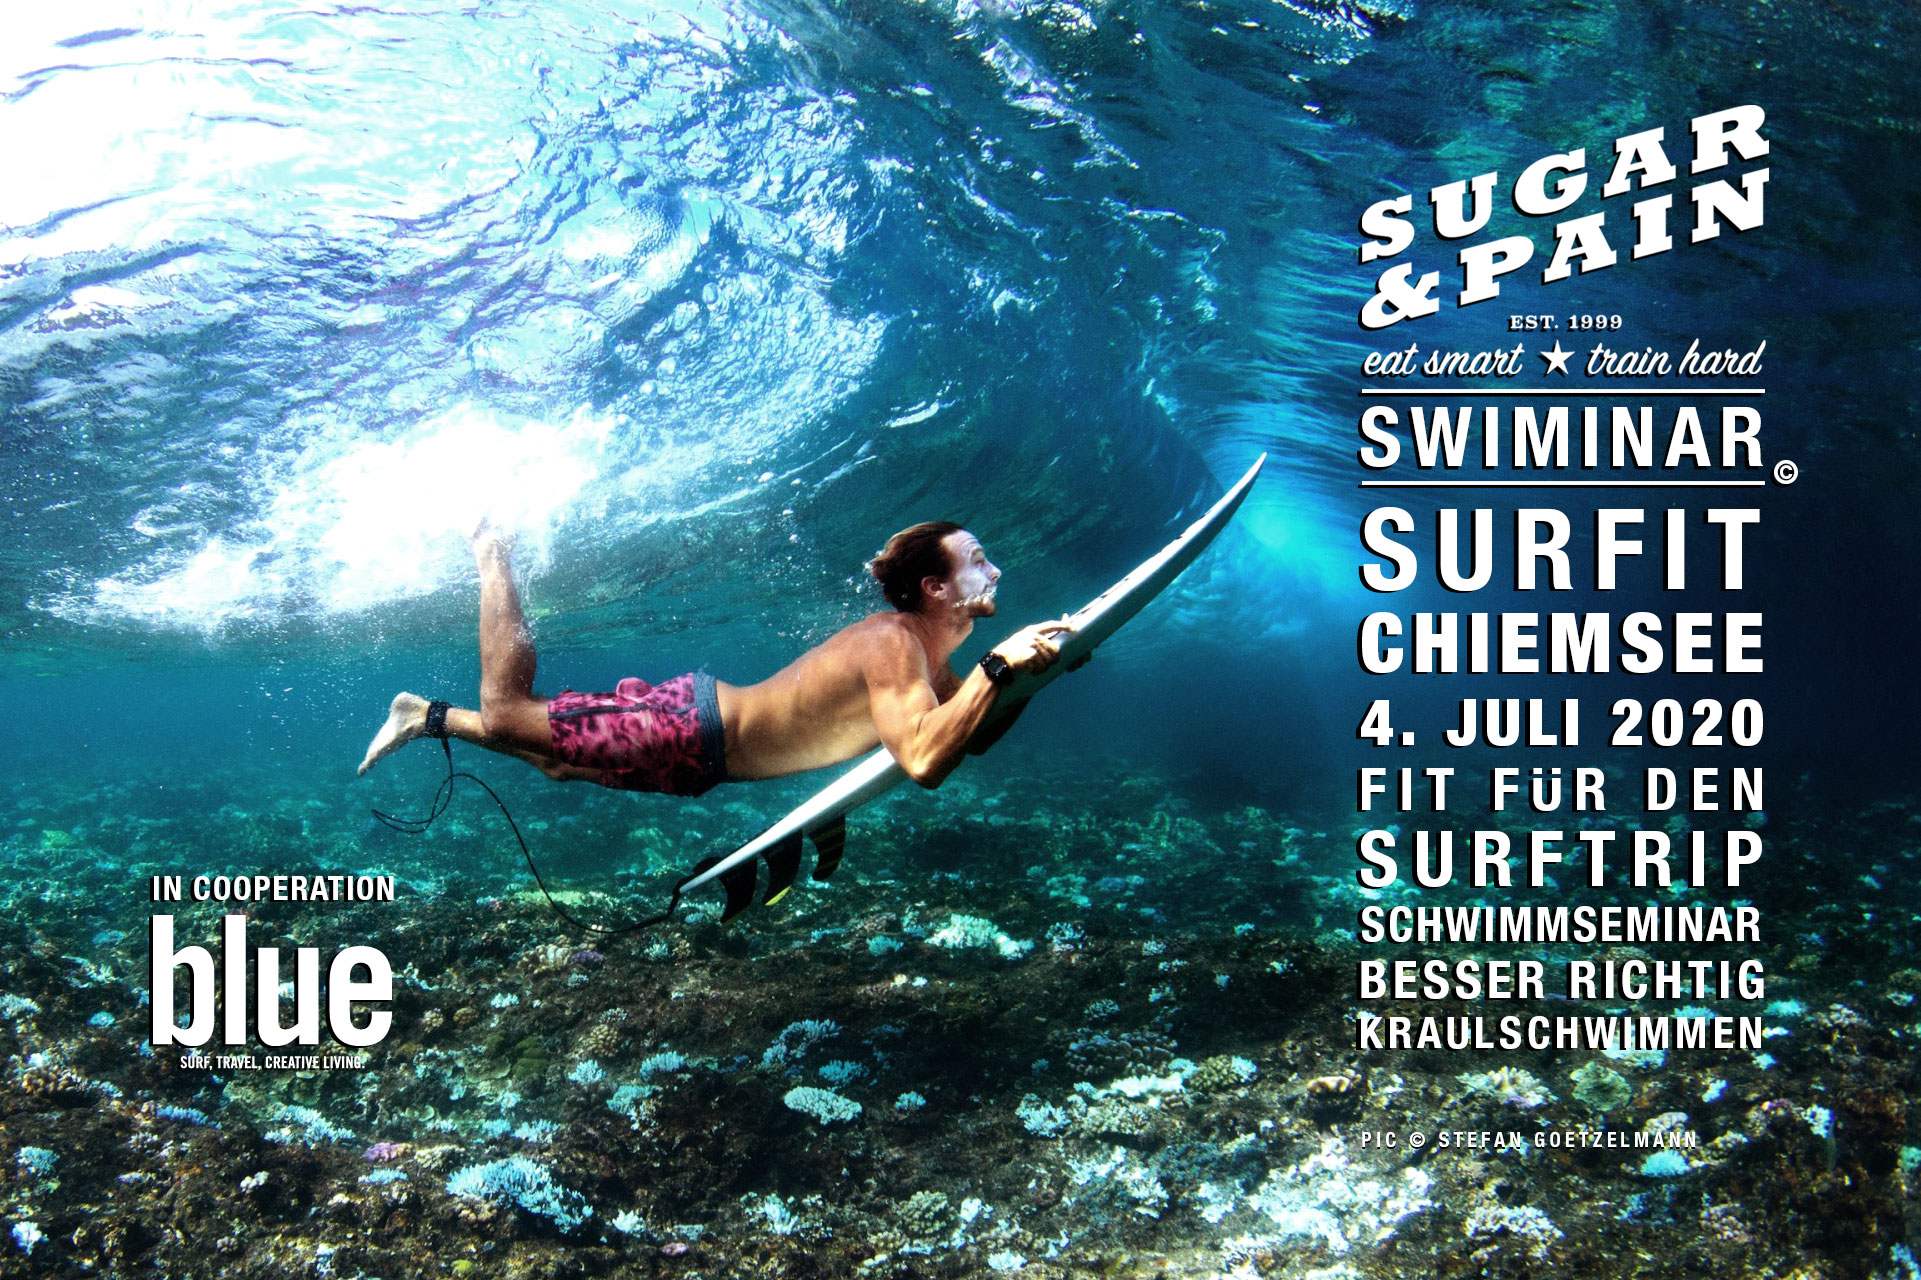 SWIMINAR #SURFIT CHIEMSEE Mit richtiger Kraultechnik fit für den Surftrip / Titel © SUGAR & PAIN / Stefan Goetzelmann